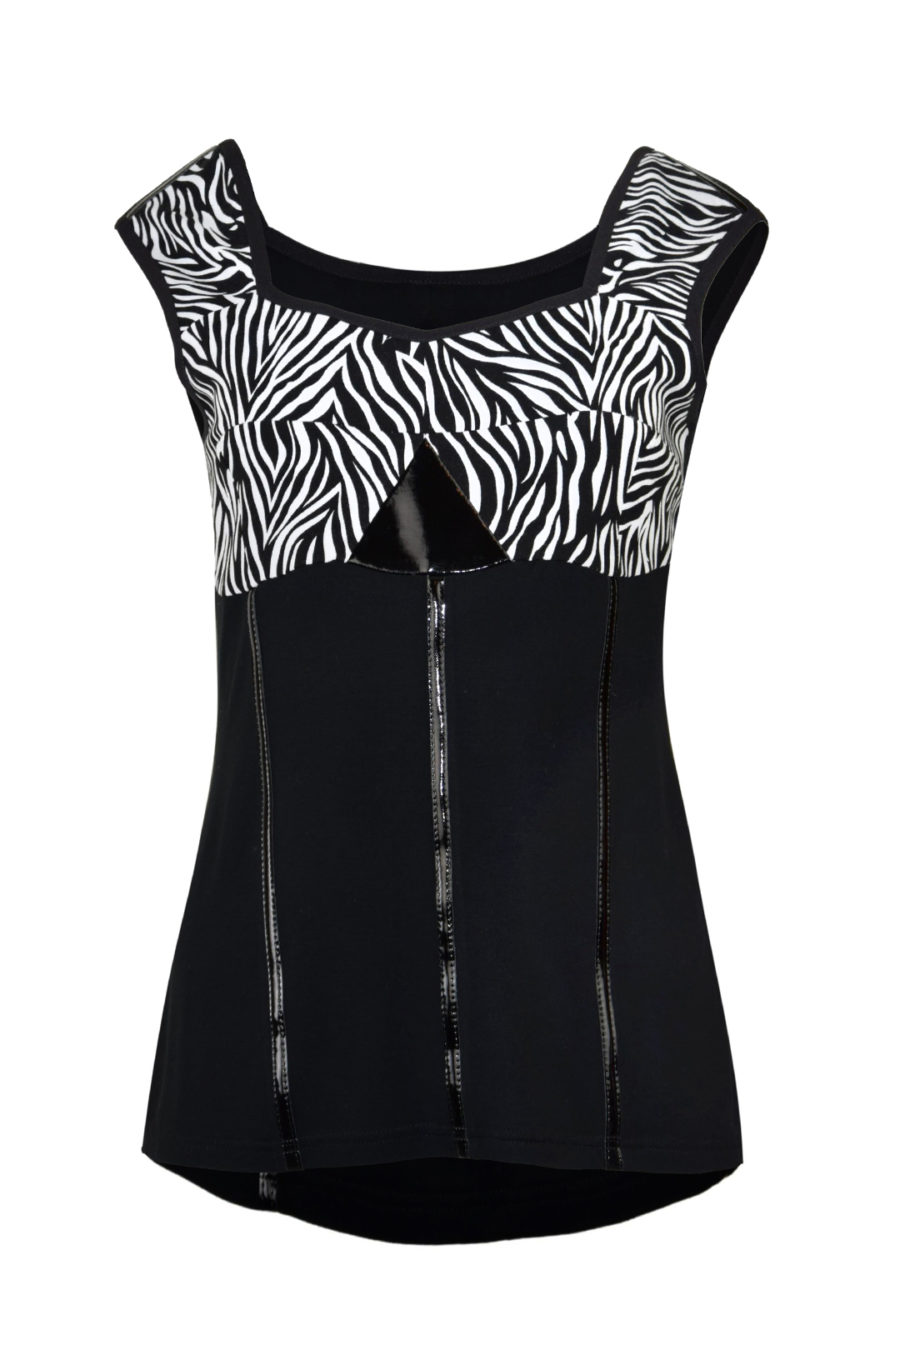 Bustier-Top aus Jersey in schwarz mit Lackkontrasten und Bustier in schwarz-weißem Zebra-Print